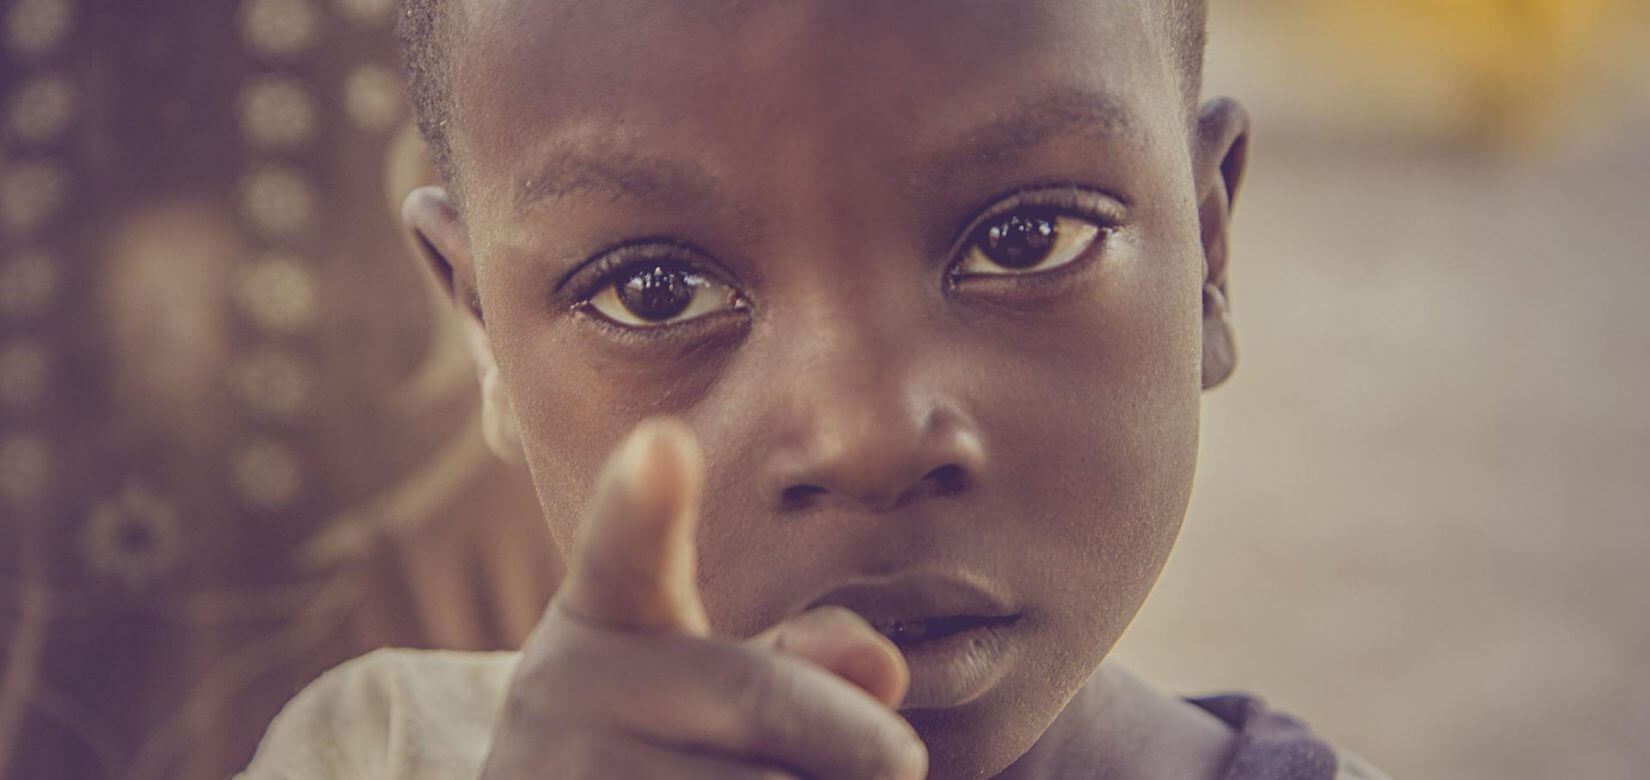 Από παιδικά χέρια το κακάο της σοκολάτας - Η μάστιγα της παιδικής εργασίας στην Αφρική